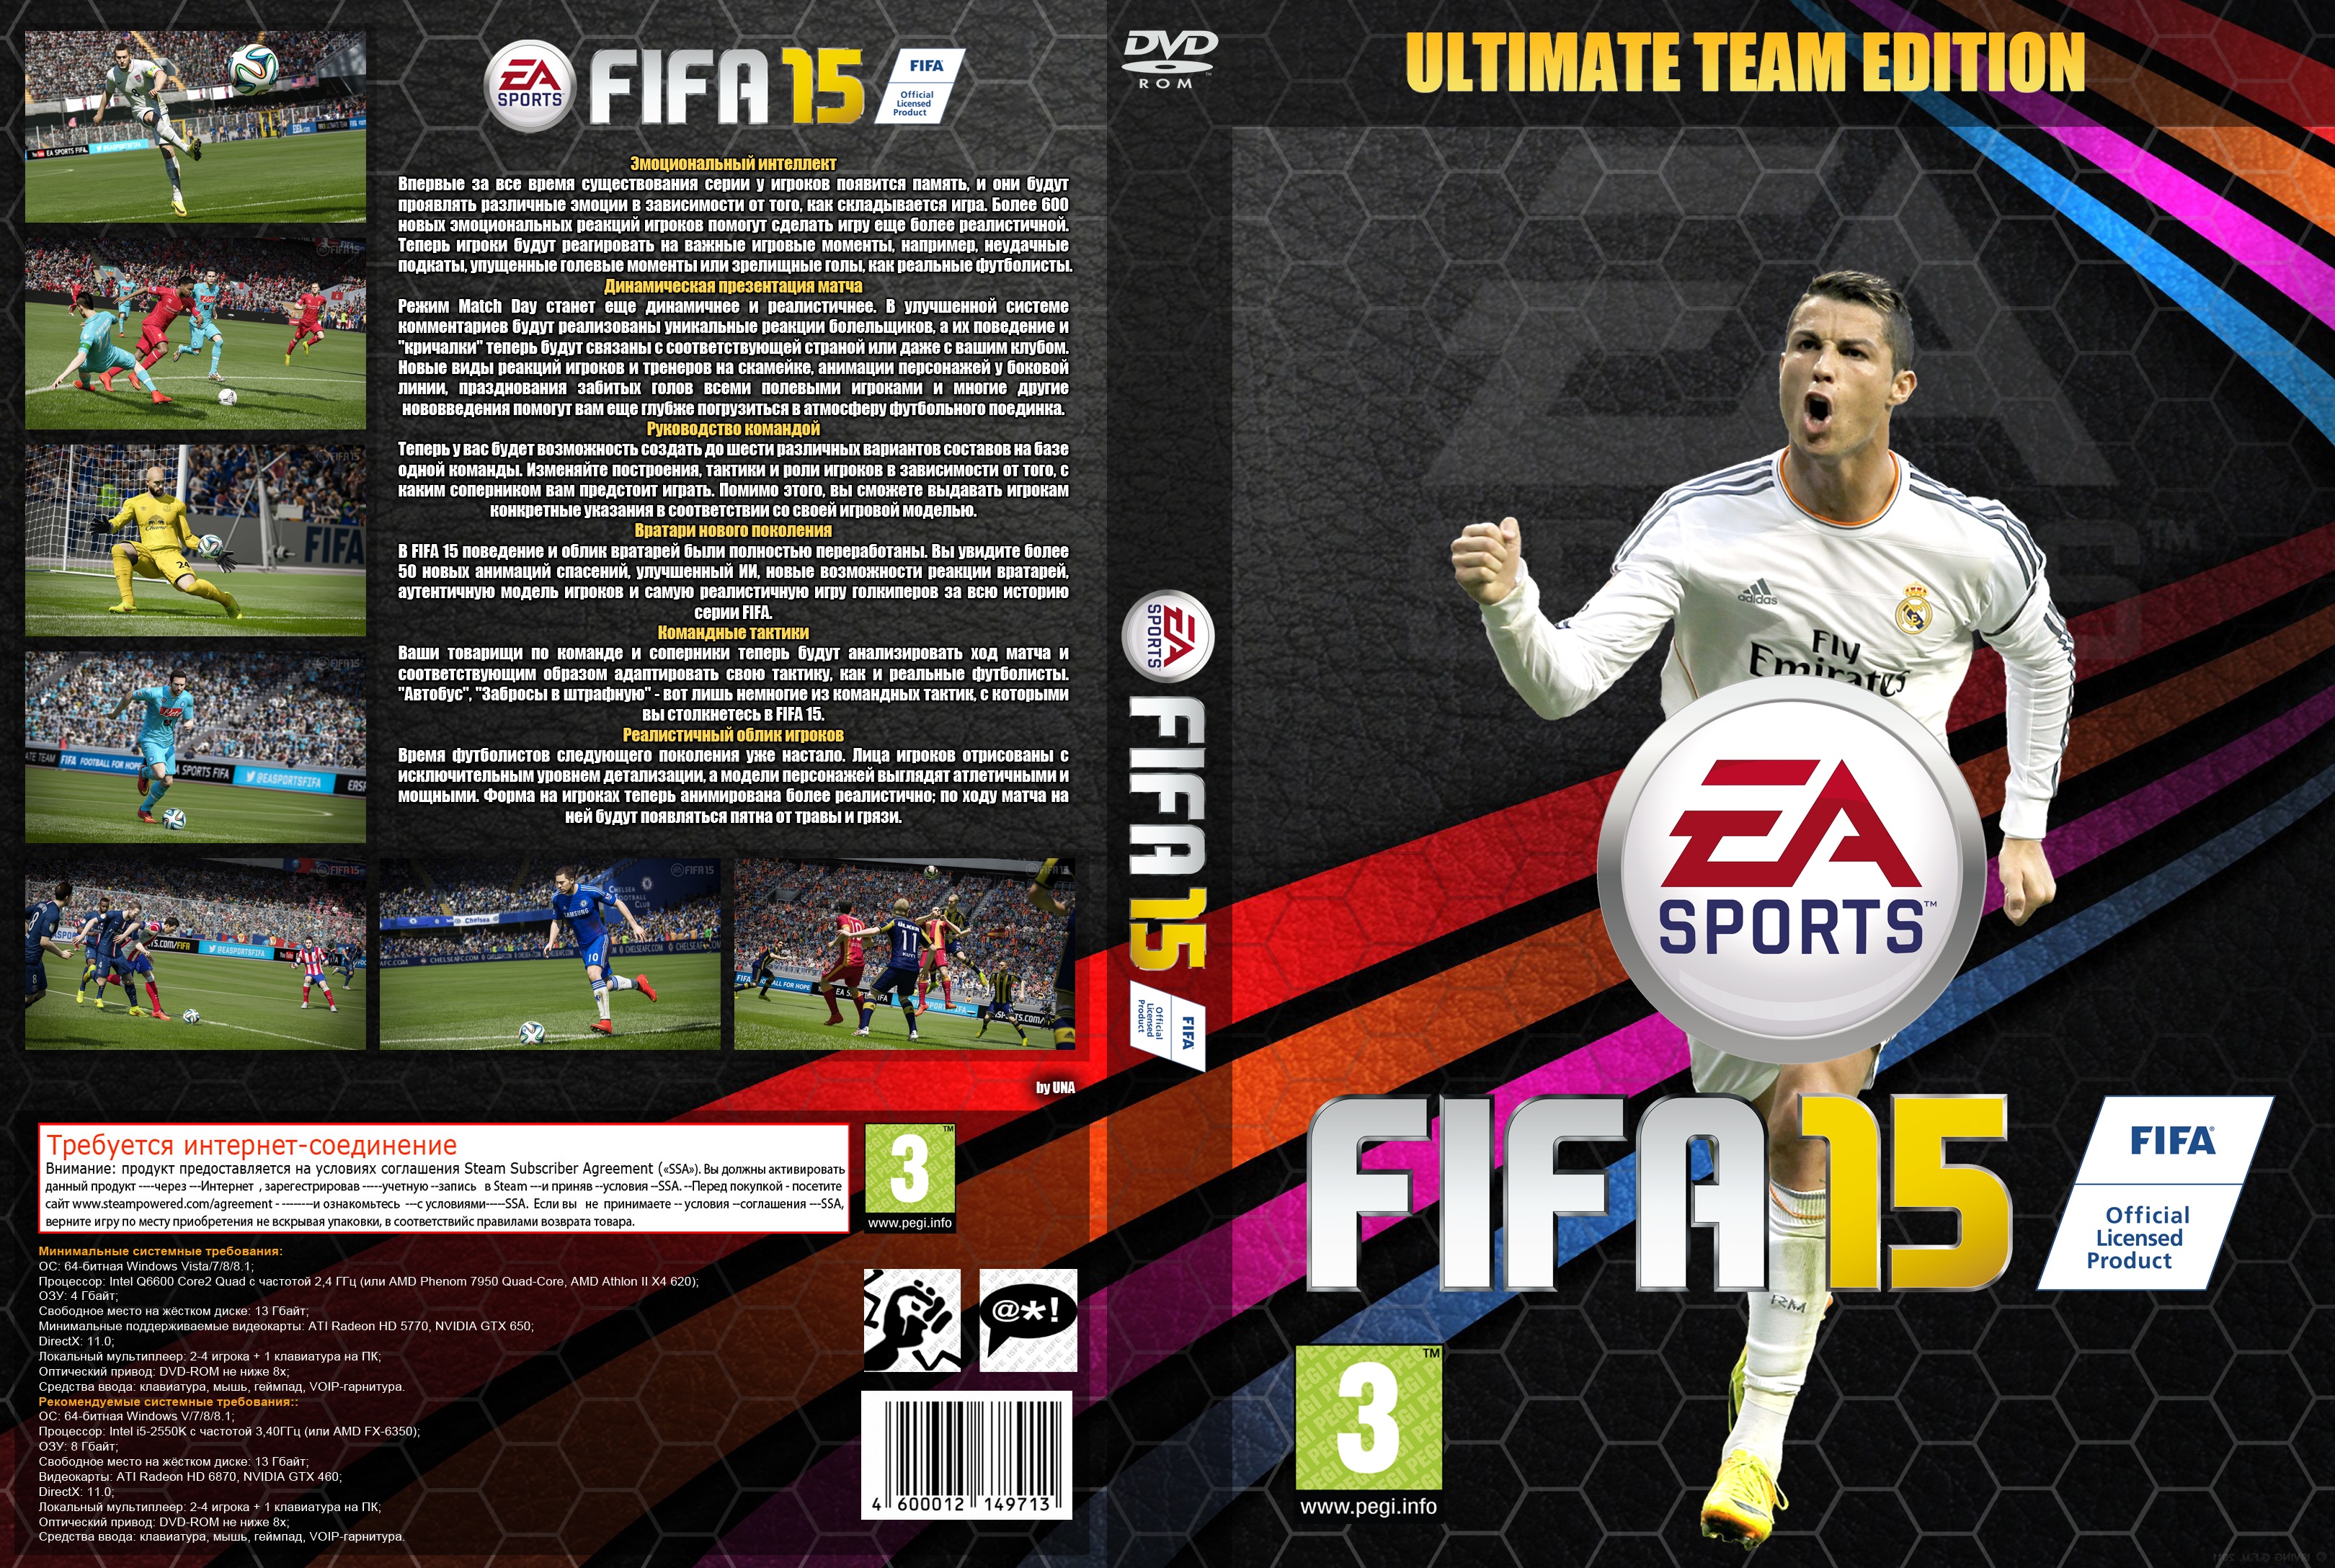 FIFA 15 Ultimate Team Edition box cover